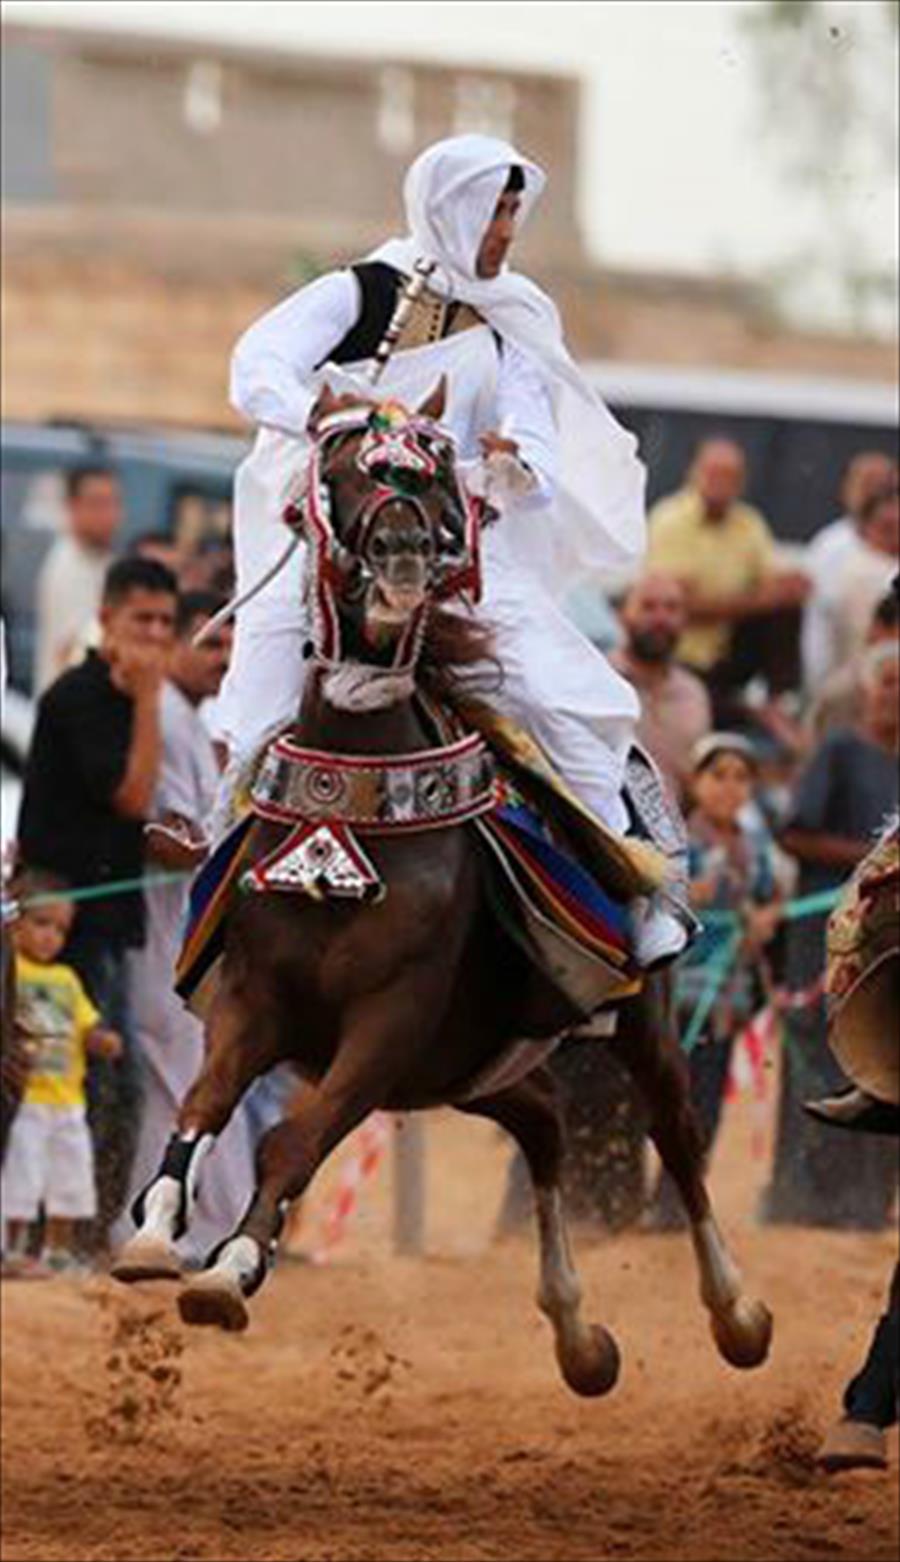 بالصور: سباق الحلبة لمربي الخيول الليبية يعود بعد غياب 42 عامًا